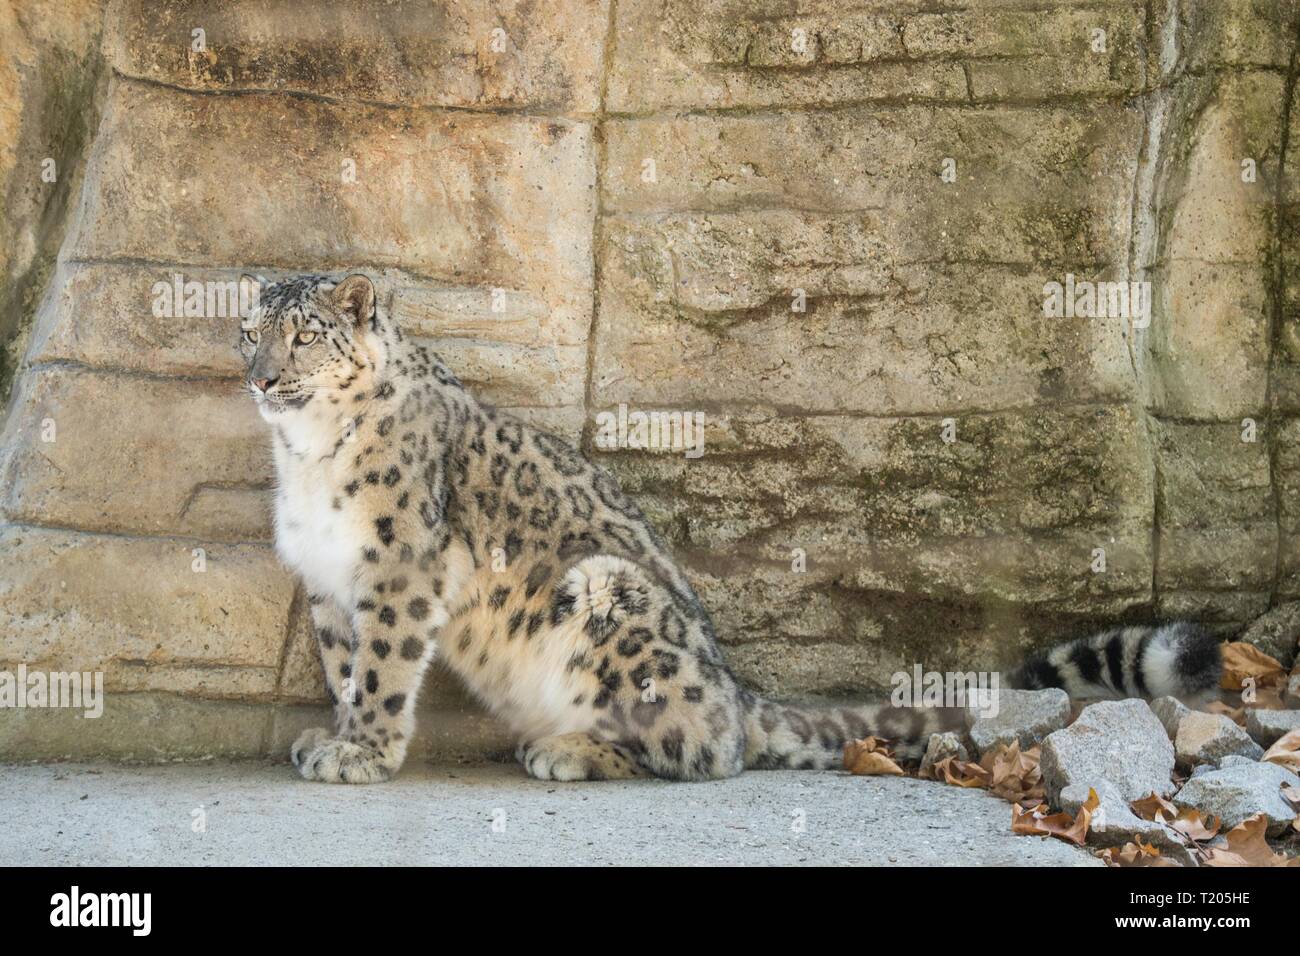 Un Himalayan snow leopard (Panthera uncia) longues sur un rocher, belle irbis en captivité au zoo, des animaux du patrimoine national de l'Afghanistan et Paki Banque D'Images